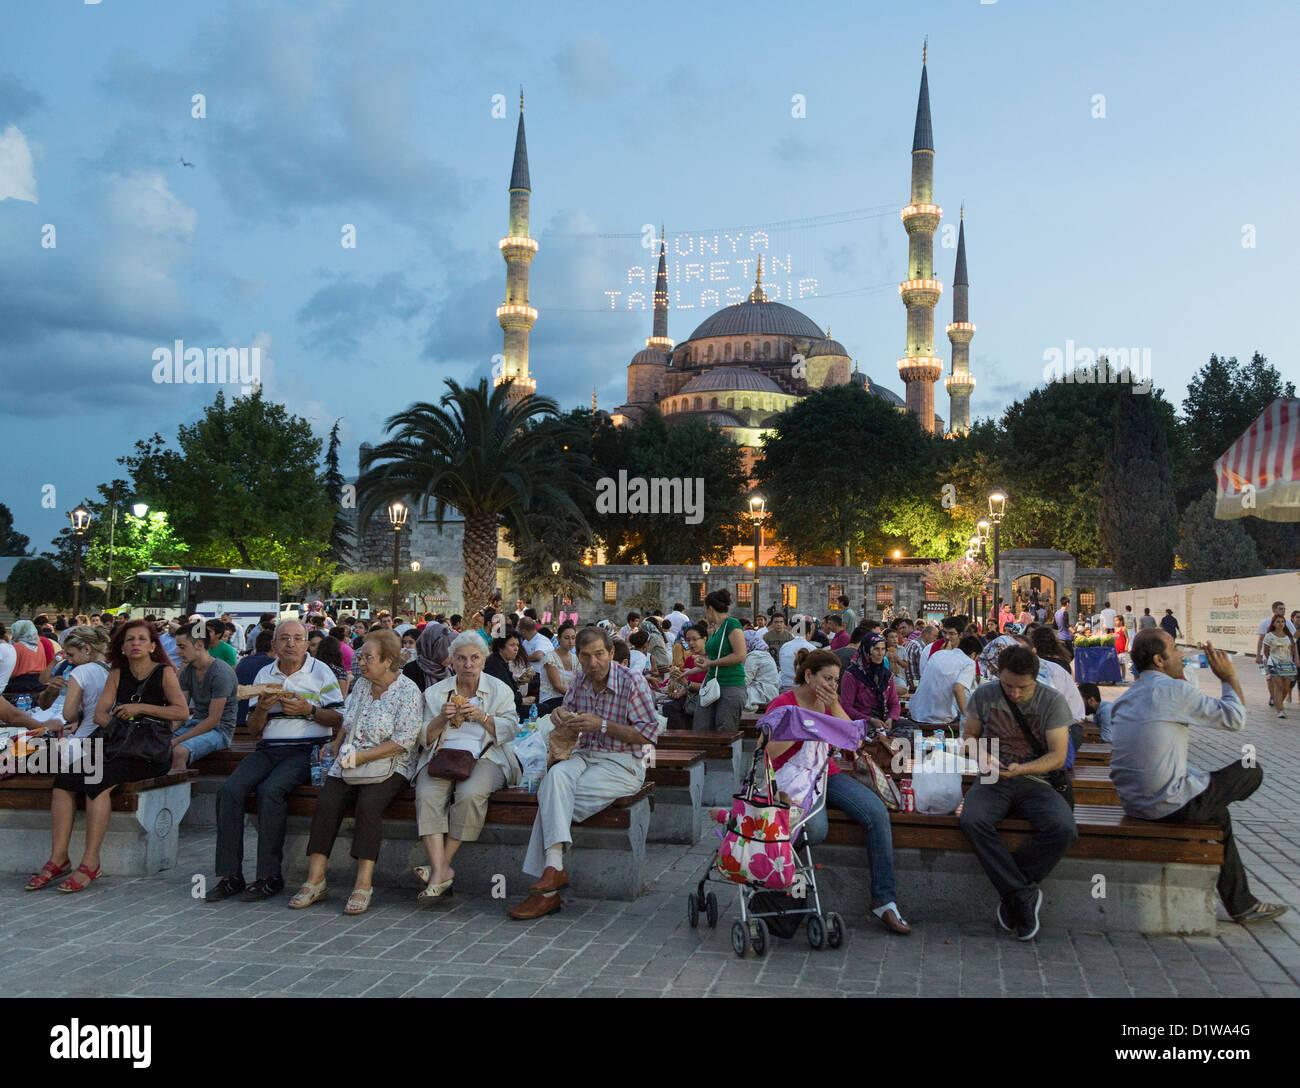 Los musulmanes durante el Ramadán, picnic en un parque en el distrito de Sultán Ahmet, Estambul, Turquía Foto de stock